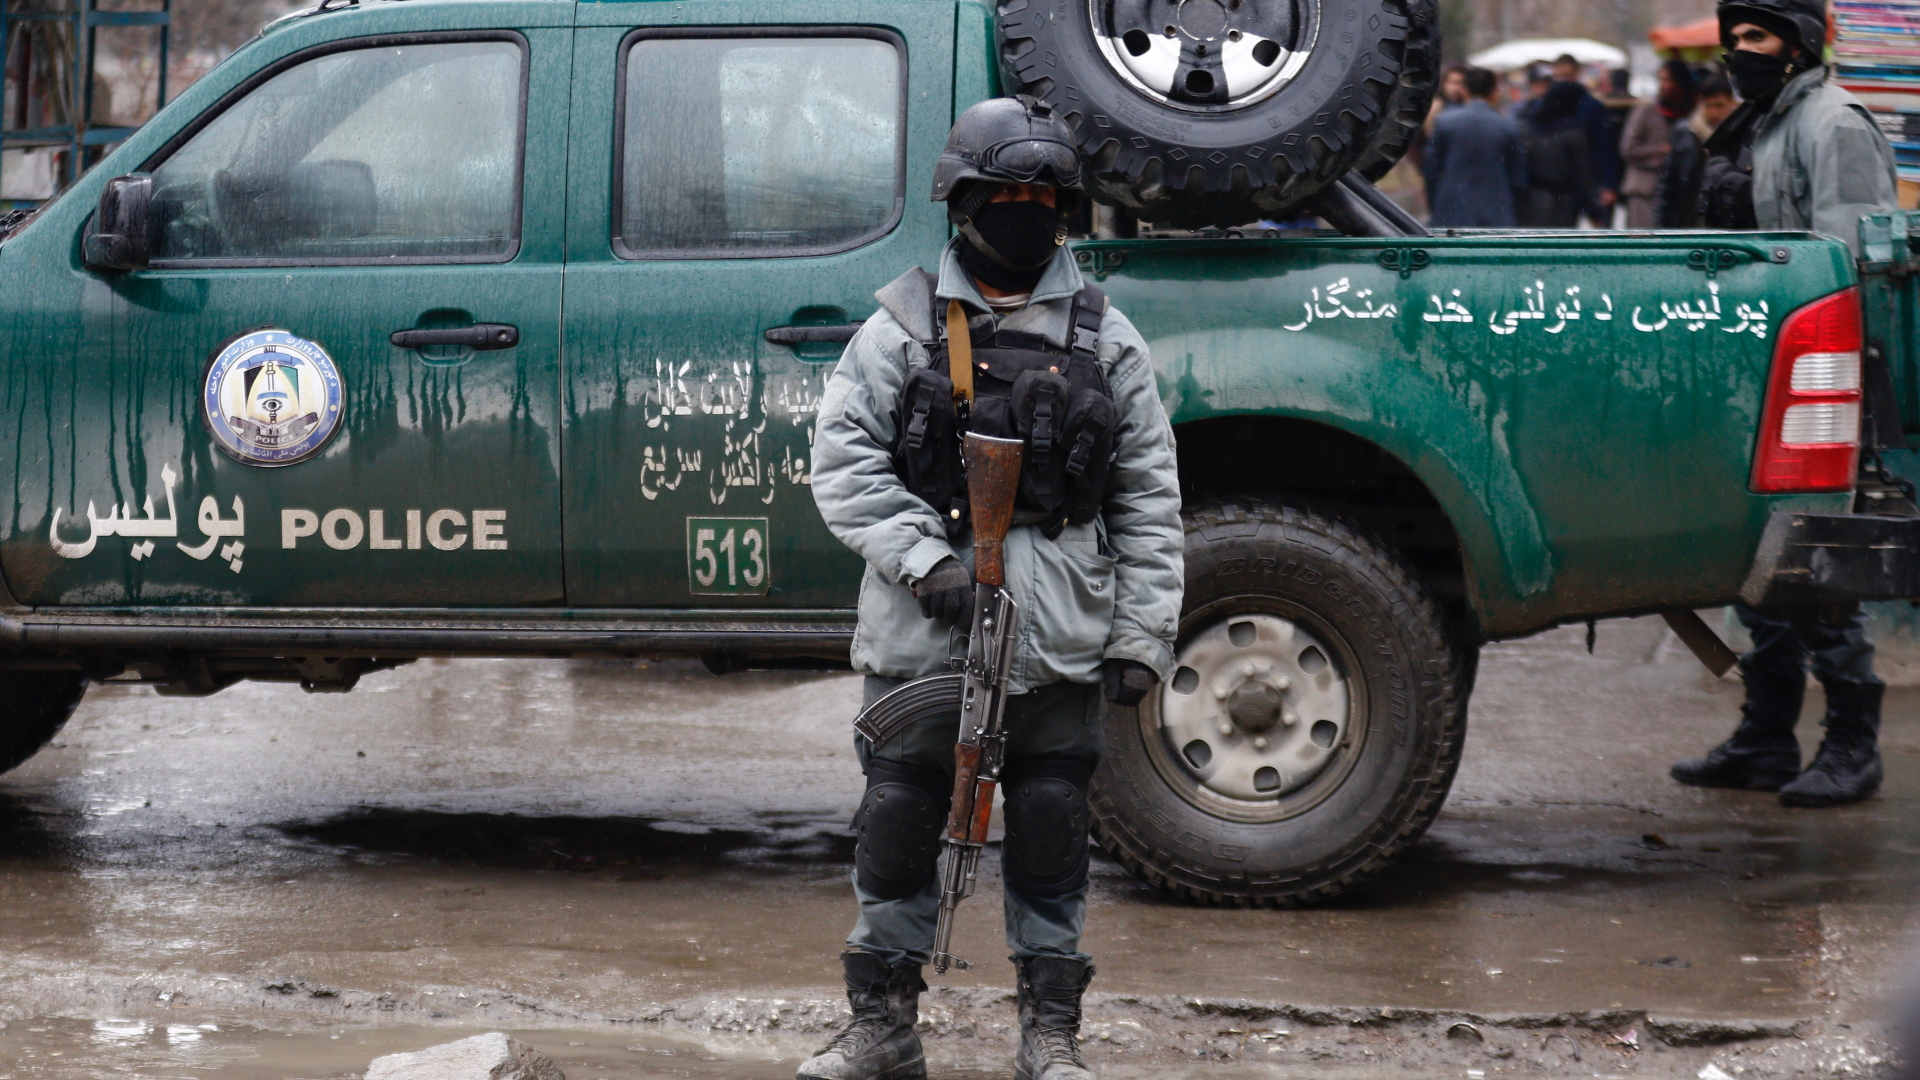 Bewaffnete und vermummte Polizeikräfte stehen vor dem Hauptquartier des afghanischen Geheimdienstes, auf das ein Selbstmordattentat verübt wurde. | Bildquelle: JAWAD JALALI/EPA-EFE/REX/Shutter